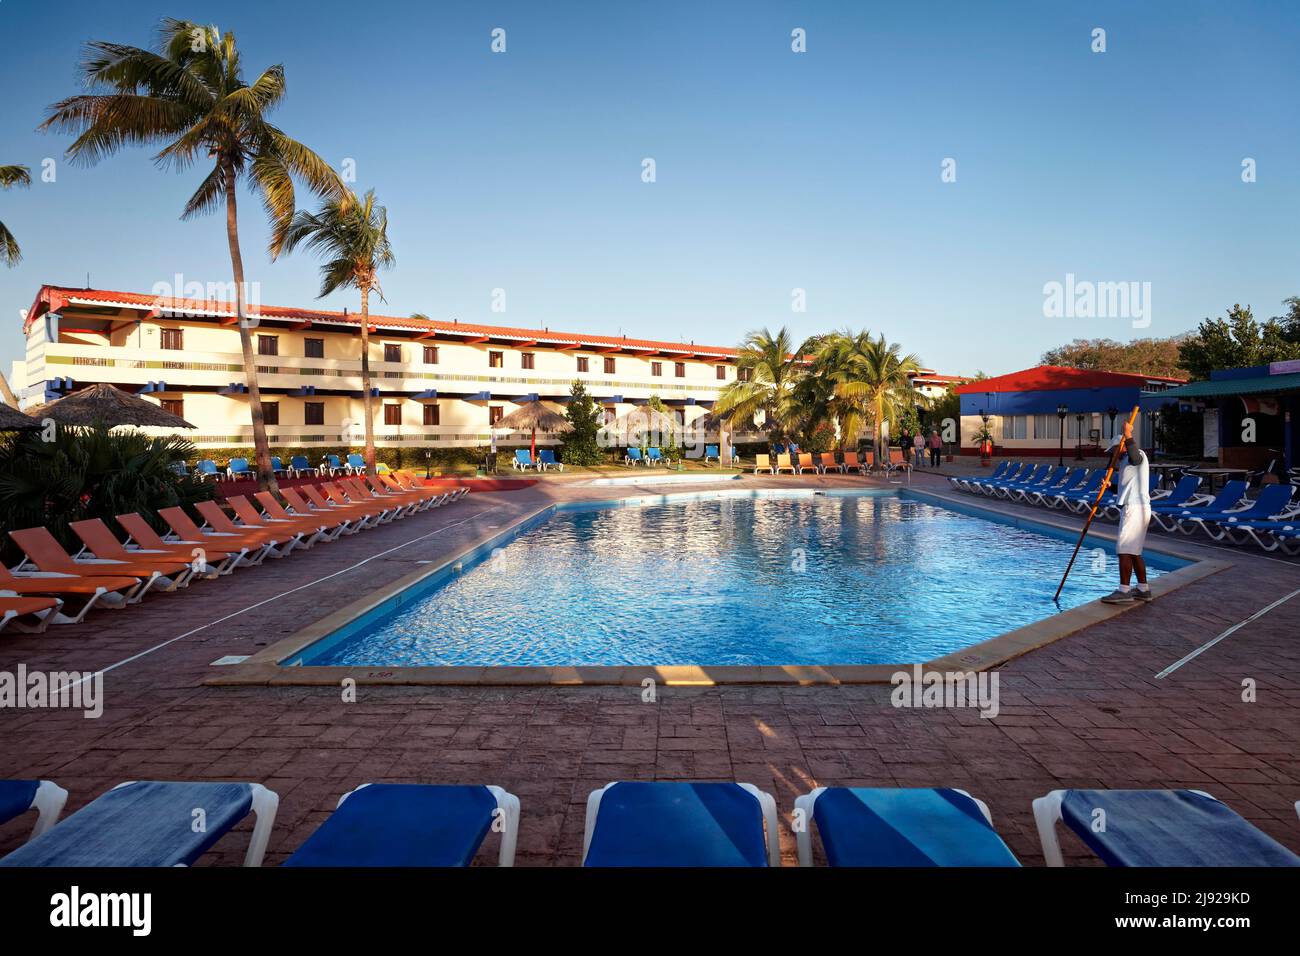 Nettoyage de la piscine, chaise longue, derrière le bâtiment de l'hôtel, parasol, cocococotier (Cocos nucifera), Hotel Club Amigo Costasur, Trinidad, Trinidad Banque D'Images